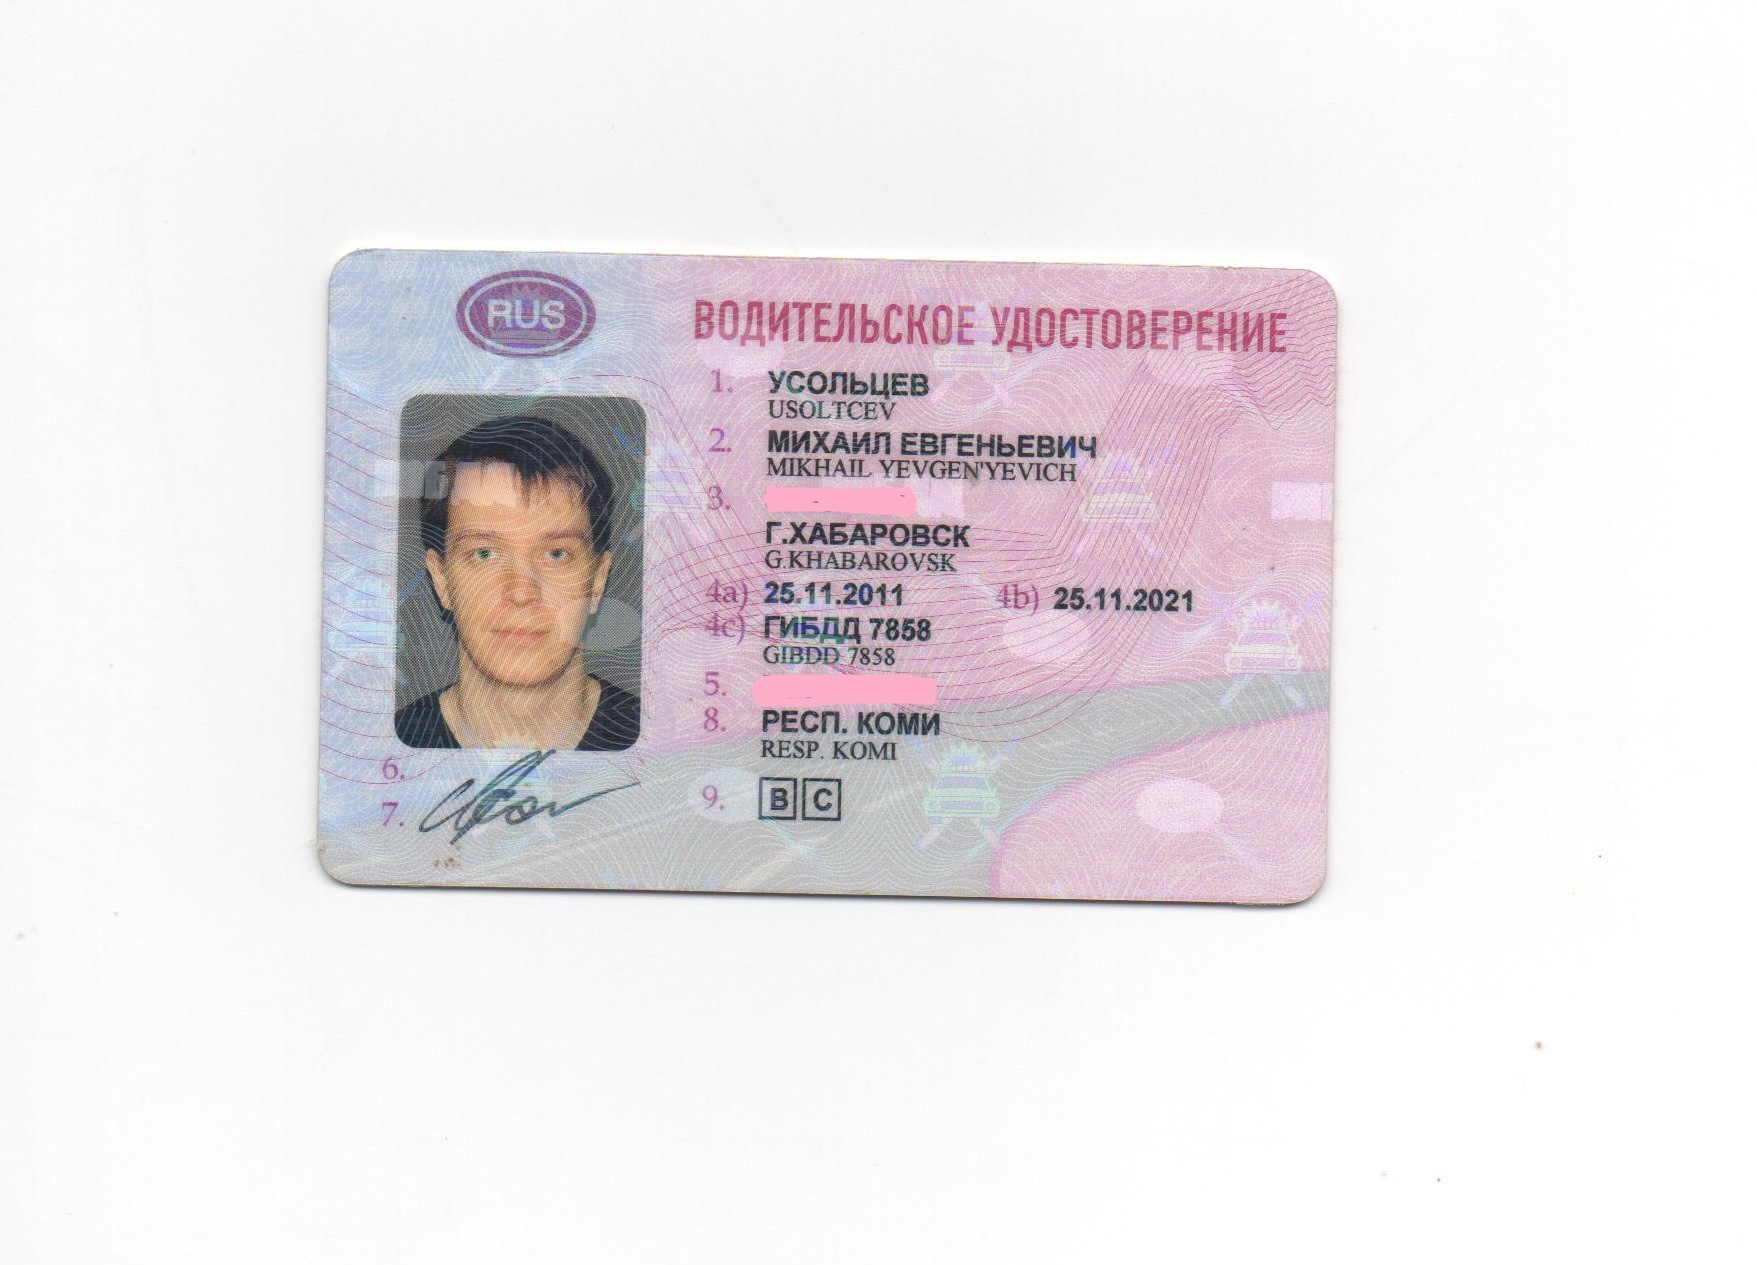 Образец российского национального водительского удостоверения разрабатывается и утверждается